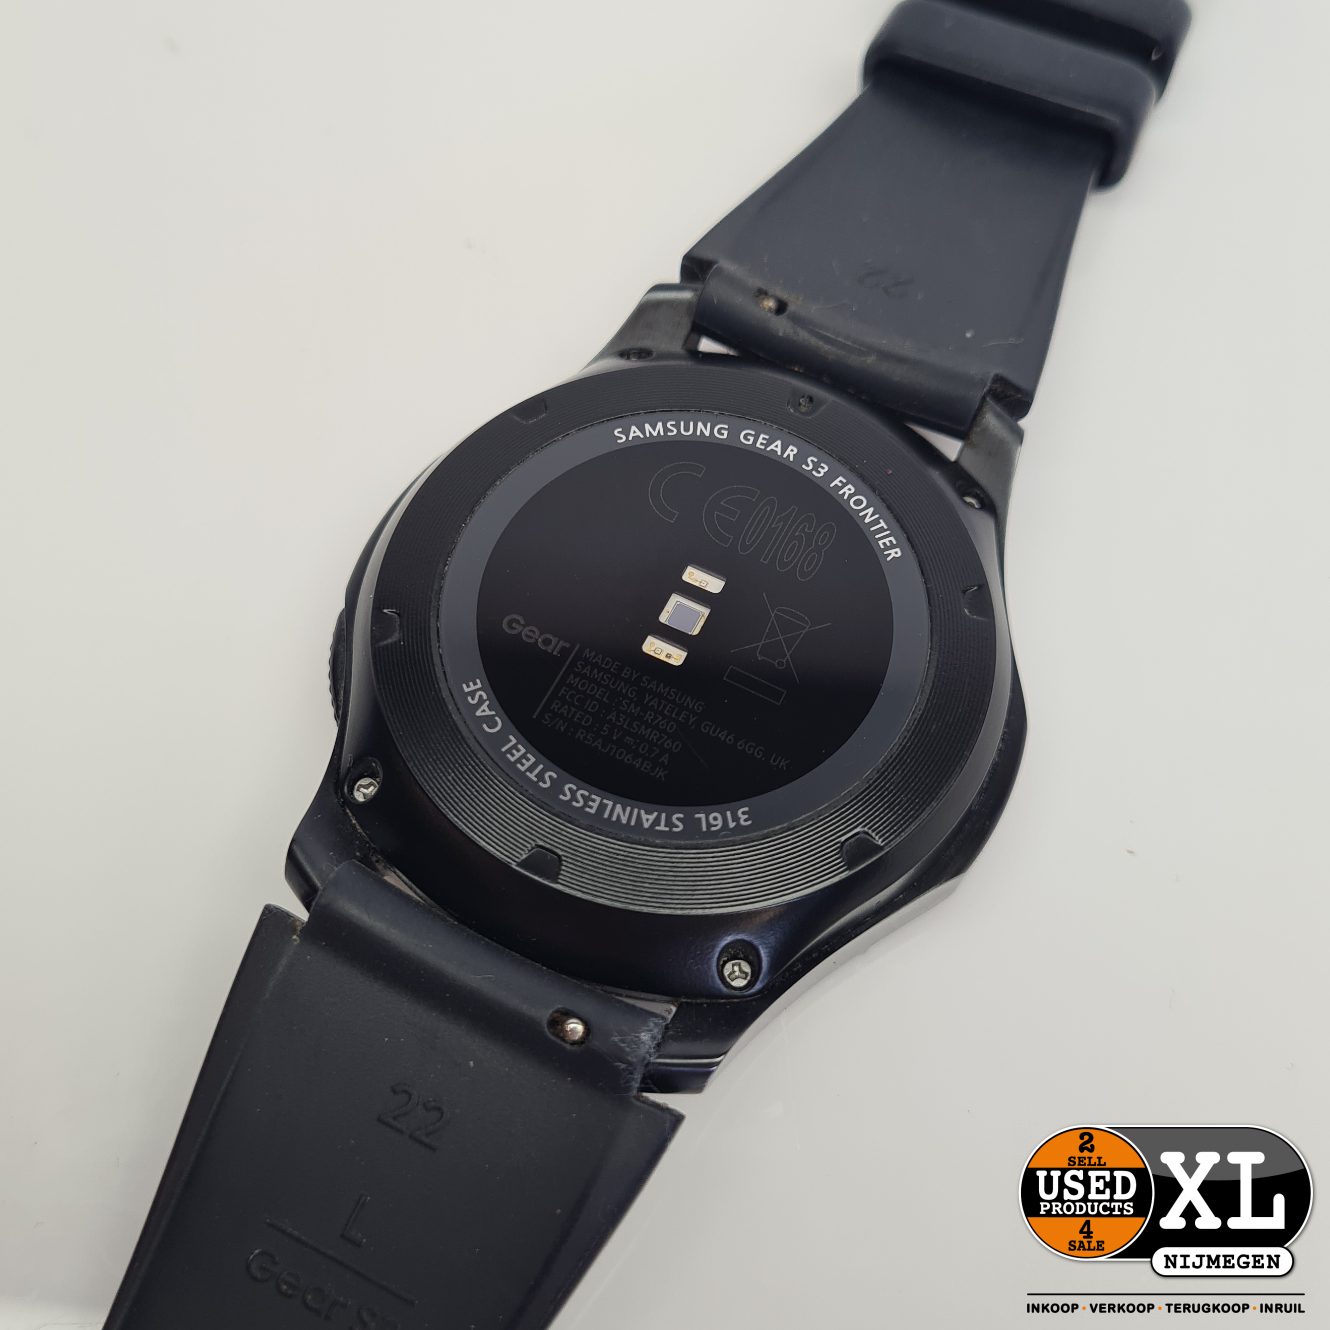 beschaving Beeldhouwwerk Pebish Samsung Gear S3 Frontier Horloge met Oplader | Nette Staat - Used Products  Nijmegen XL